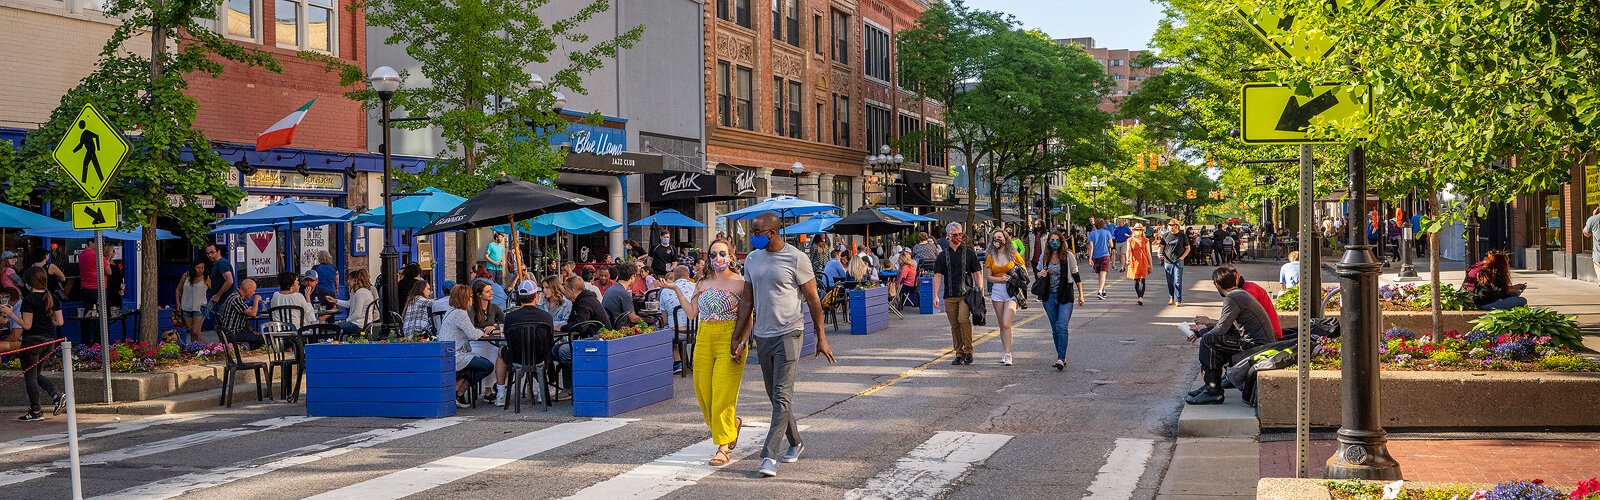 People walk down Main Street in Ann Arbor.